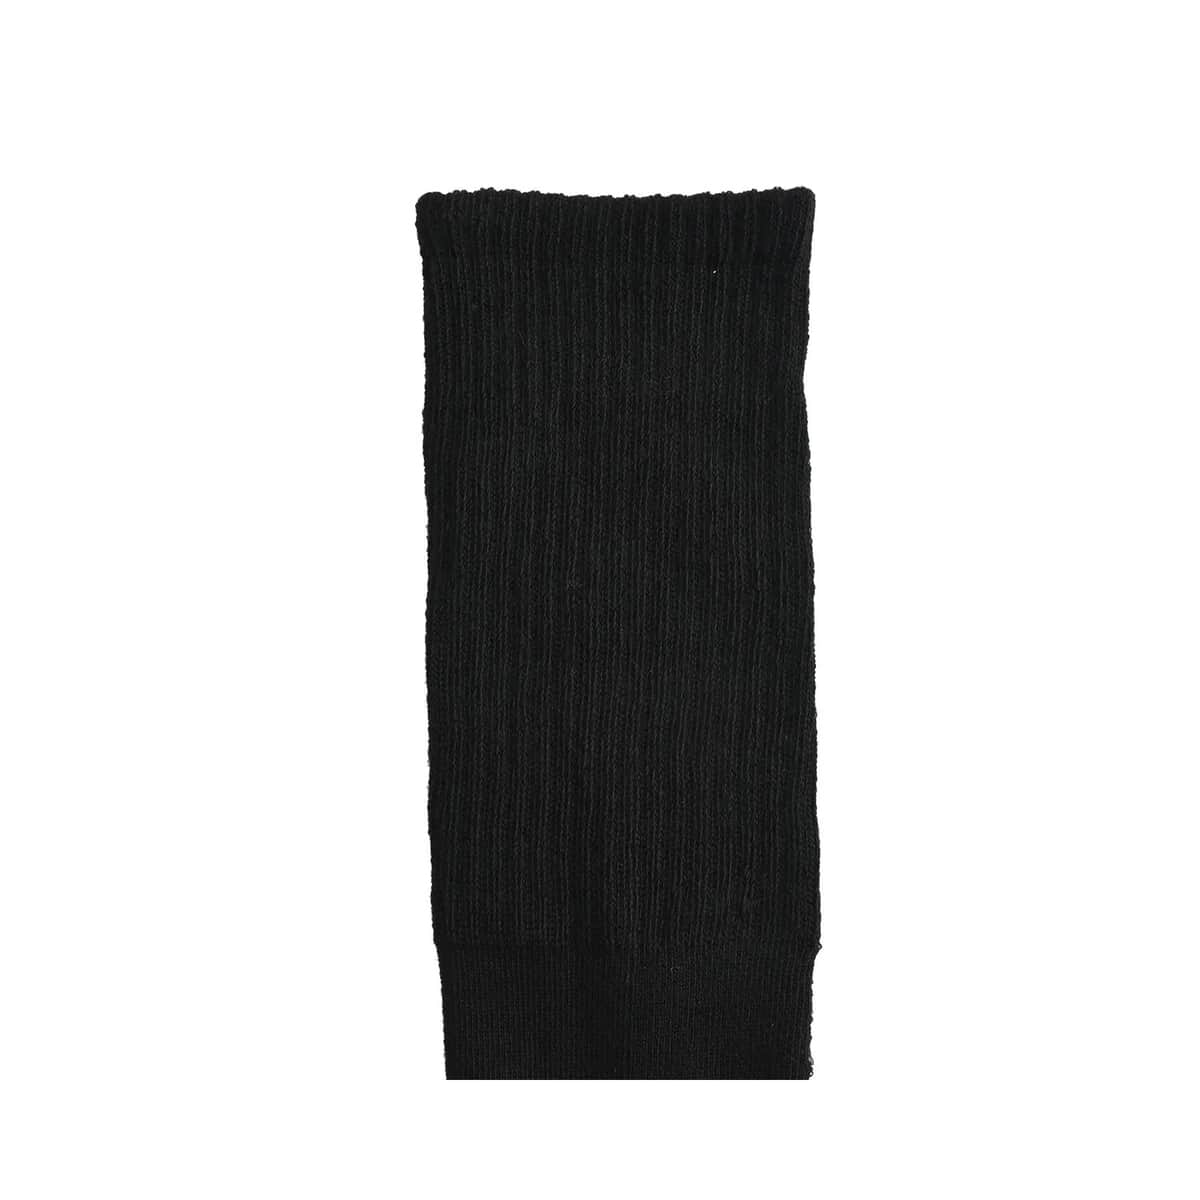 Slazenger Men's 7pck Crew Athletic Socks -Black (Sizes 6-12.5) image number 3